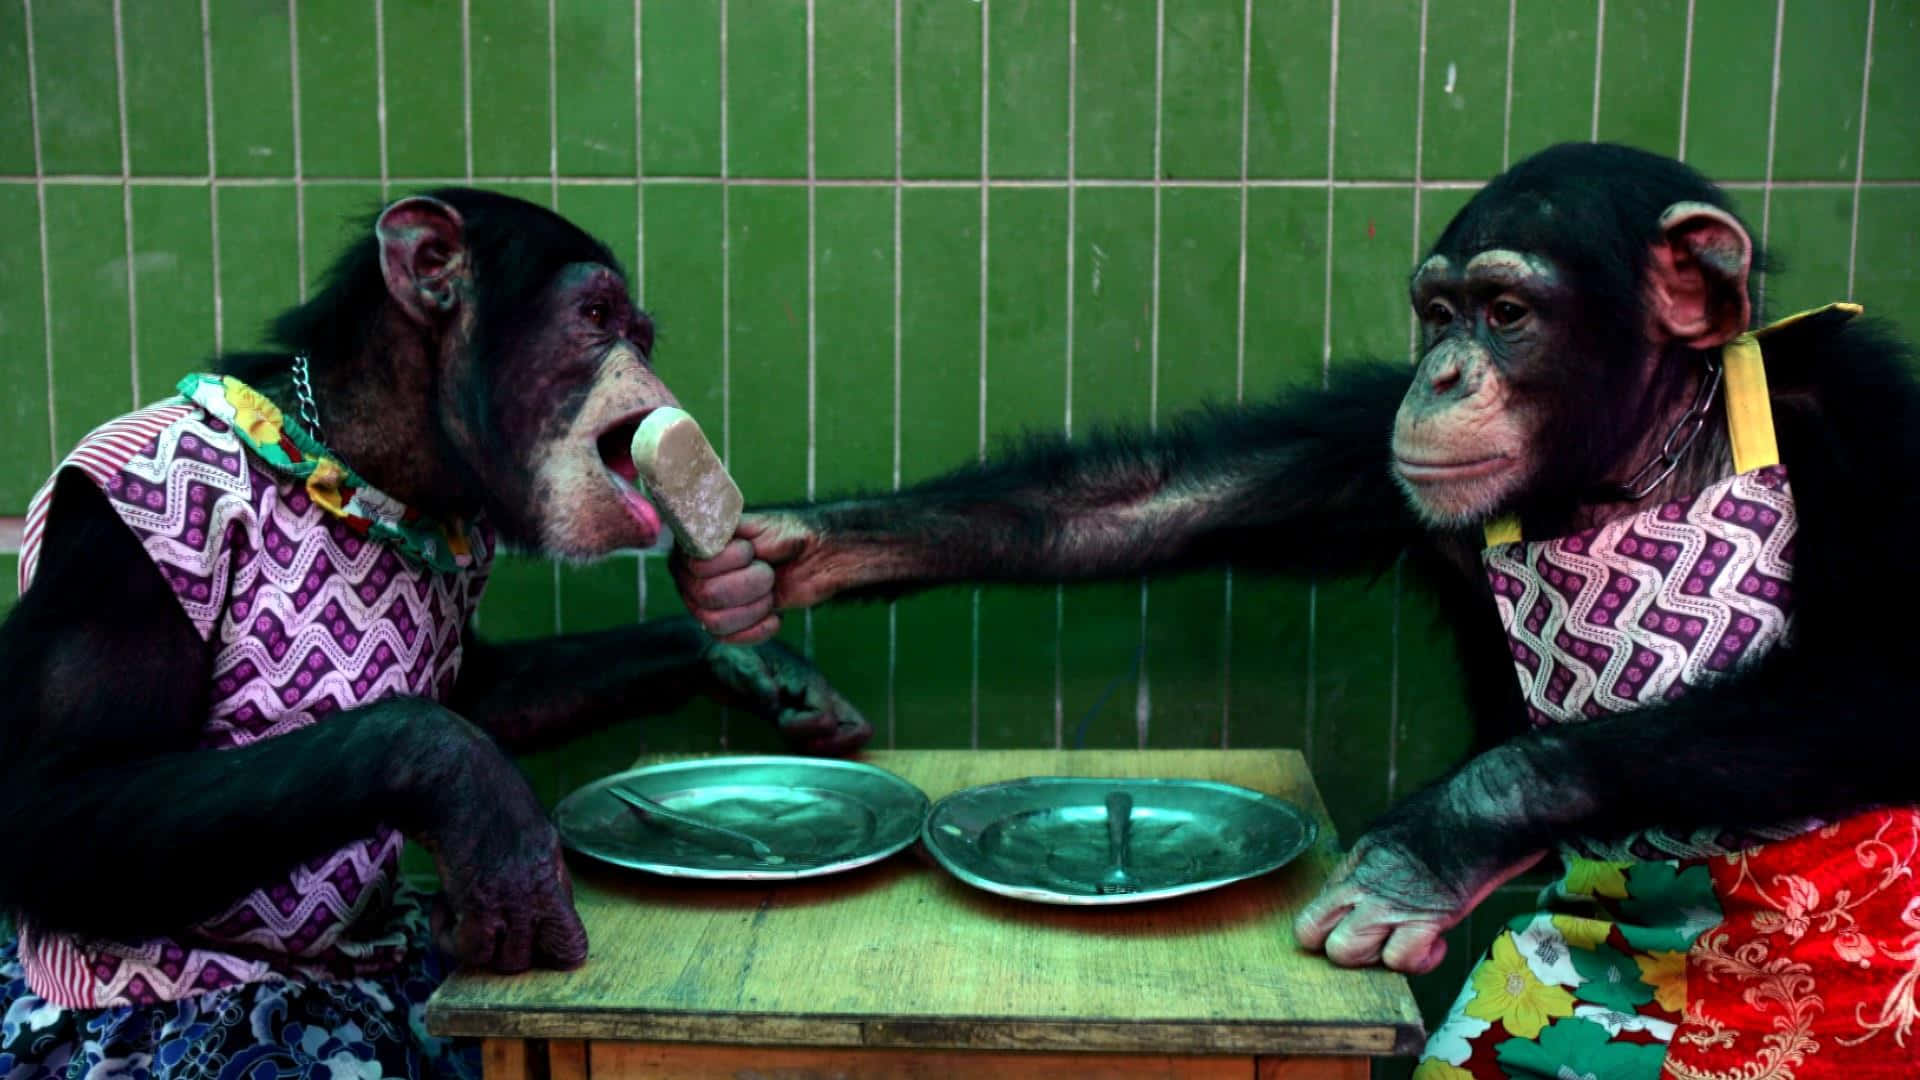 Billede af aber, der fodres ved bordet.